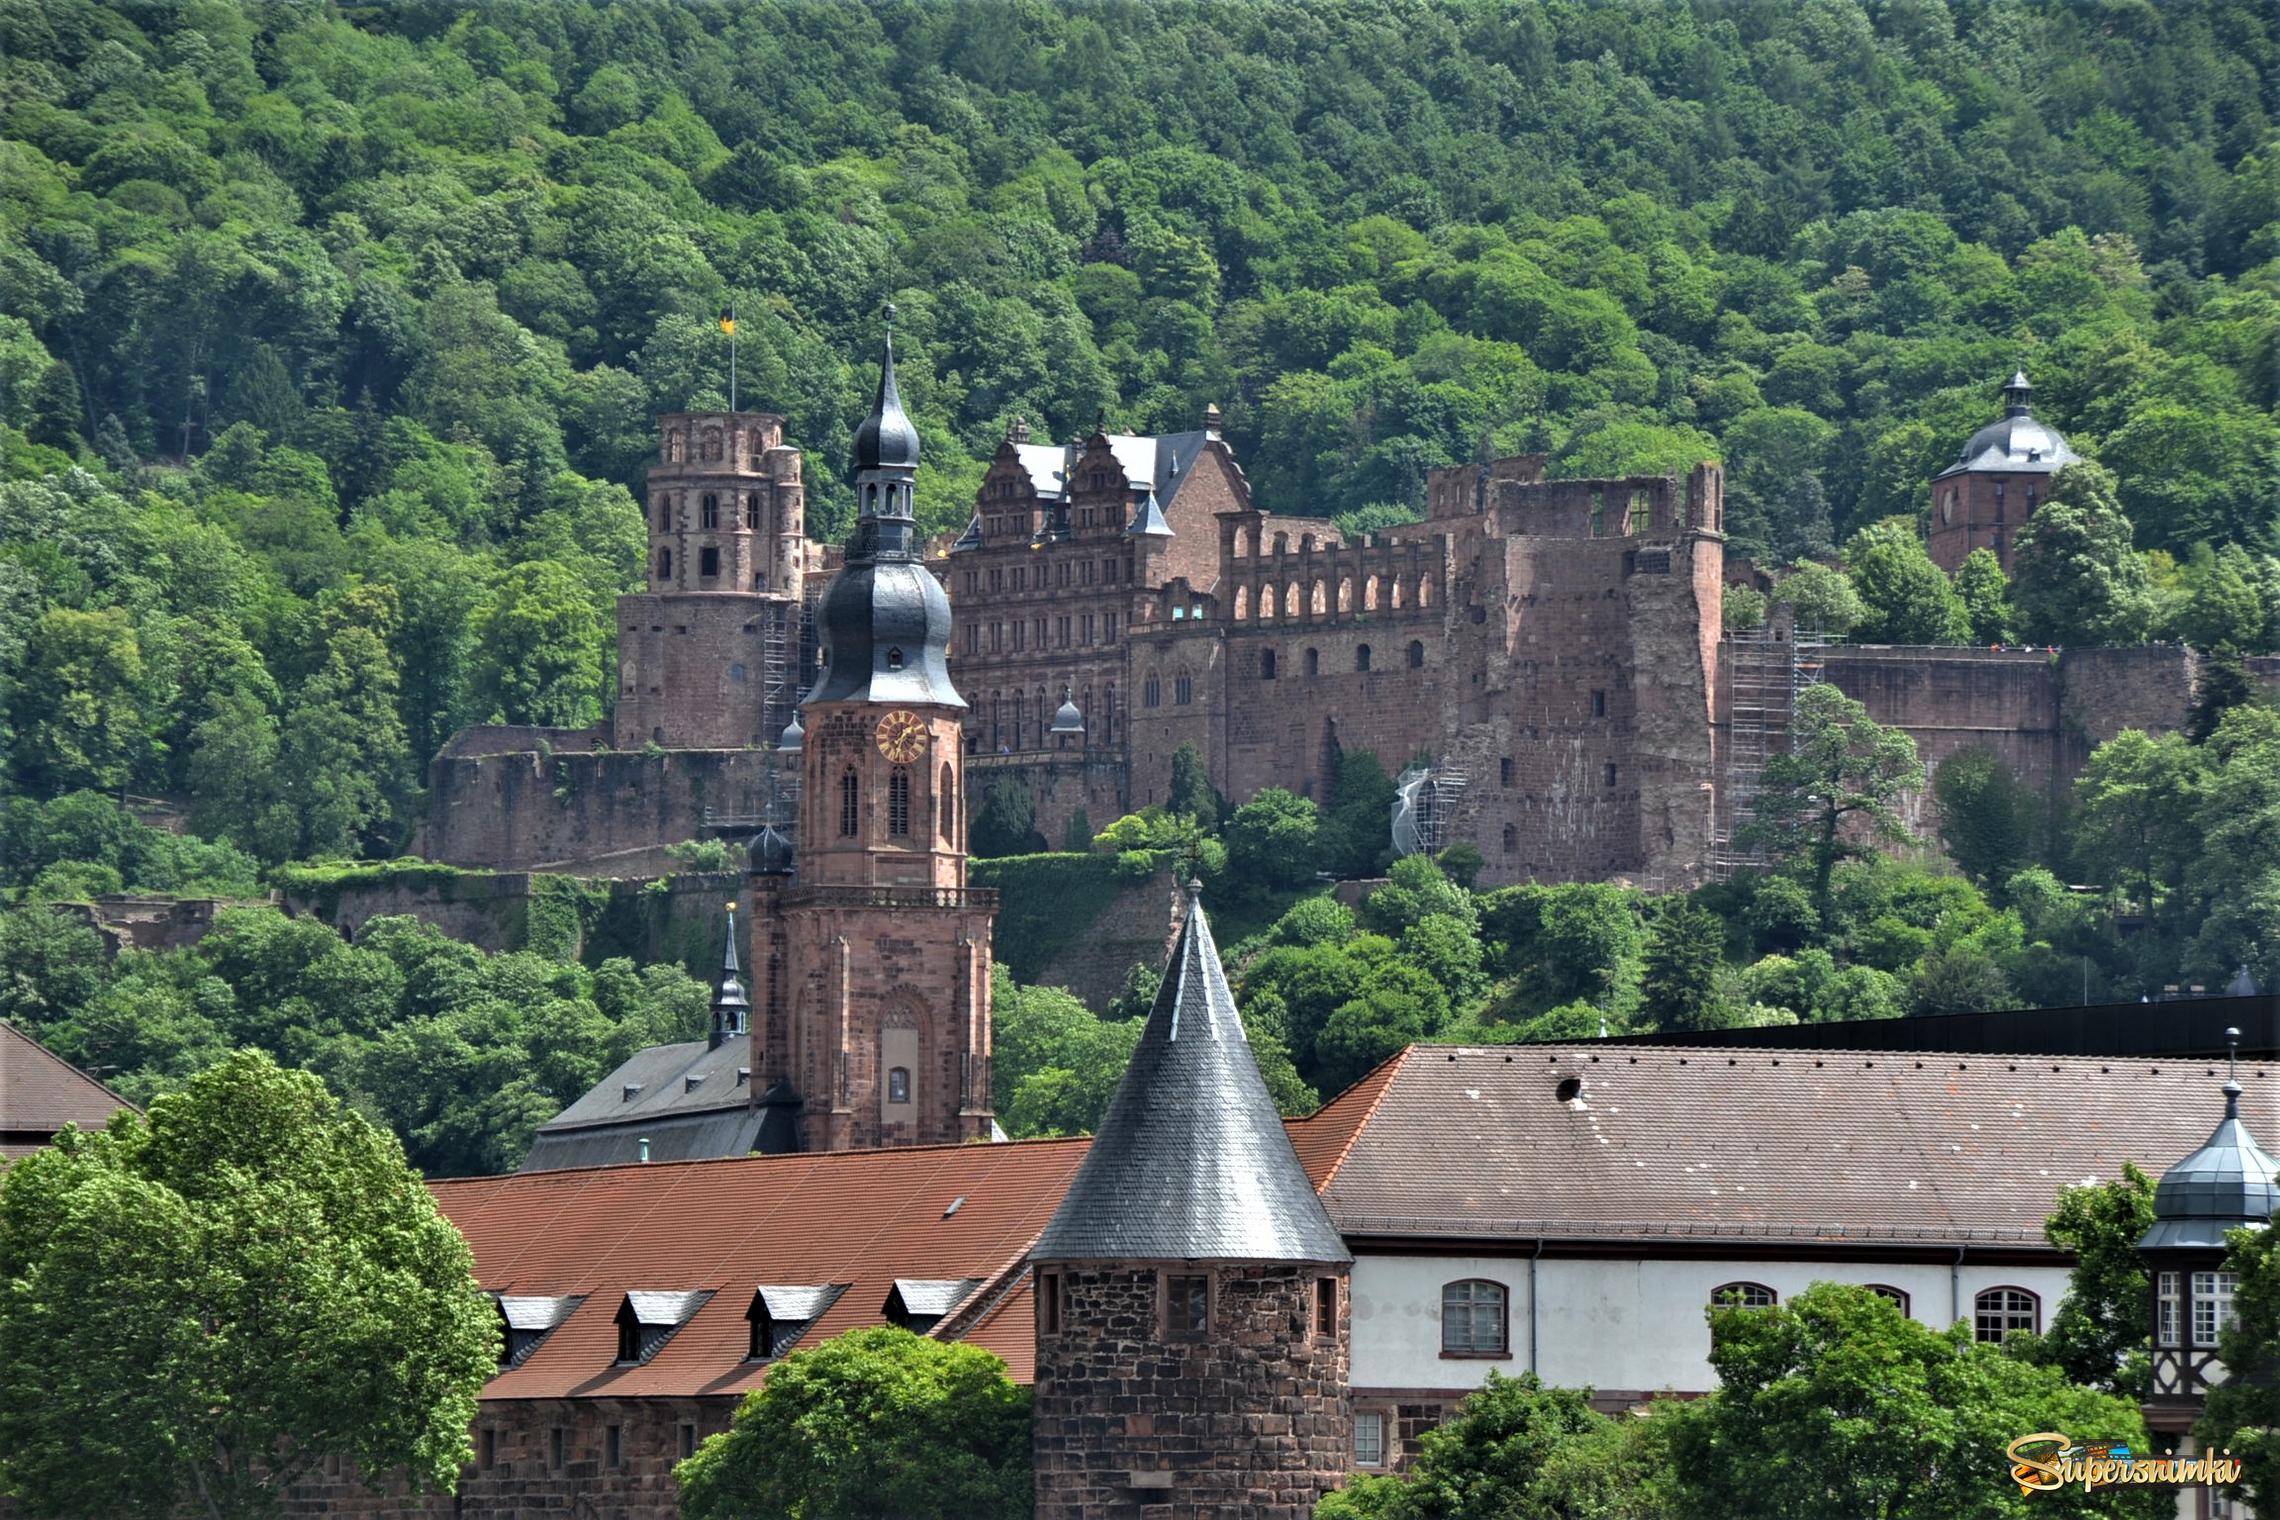 Гайдельбергский замок(1225)